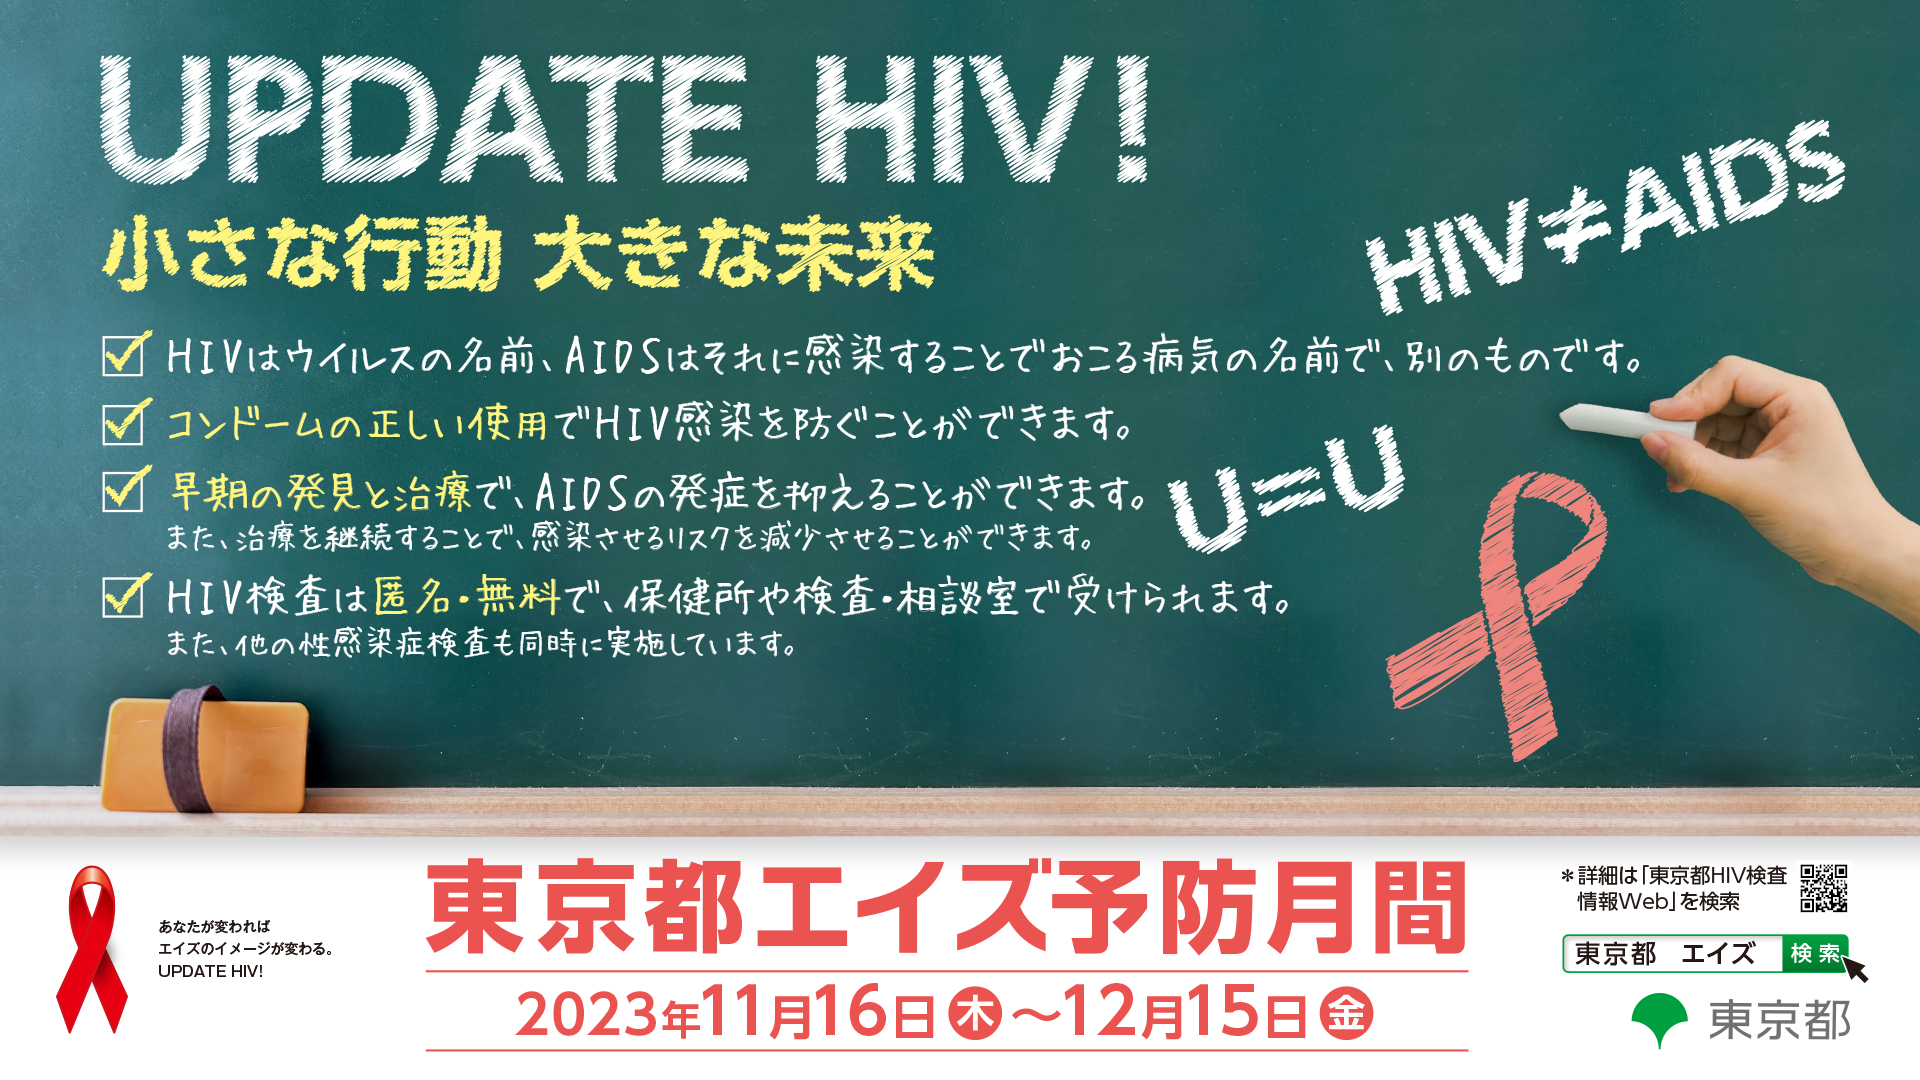 知って、学んで、行動する - 東京都HIV検査・相談月間 -